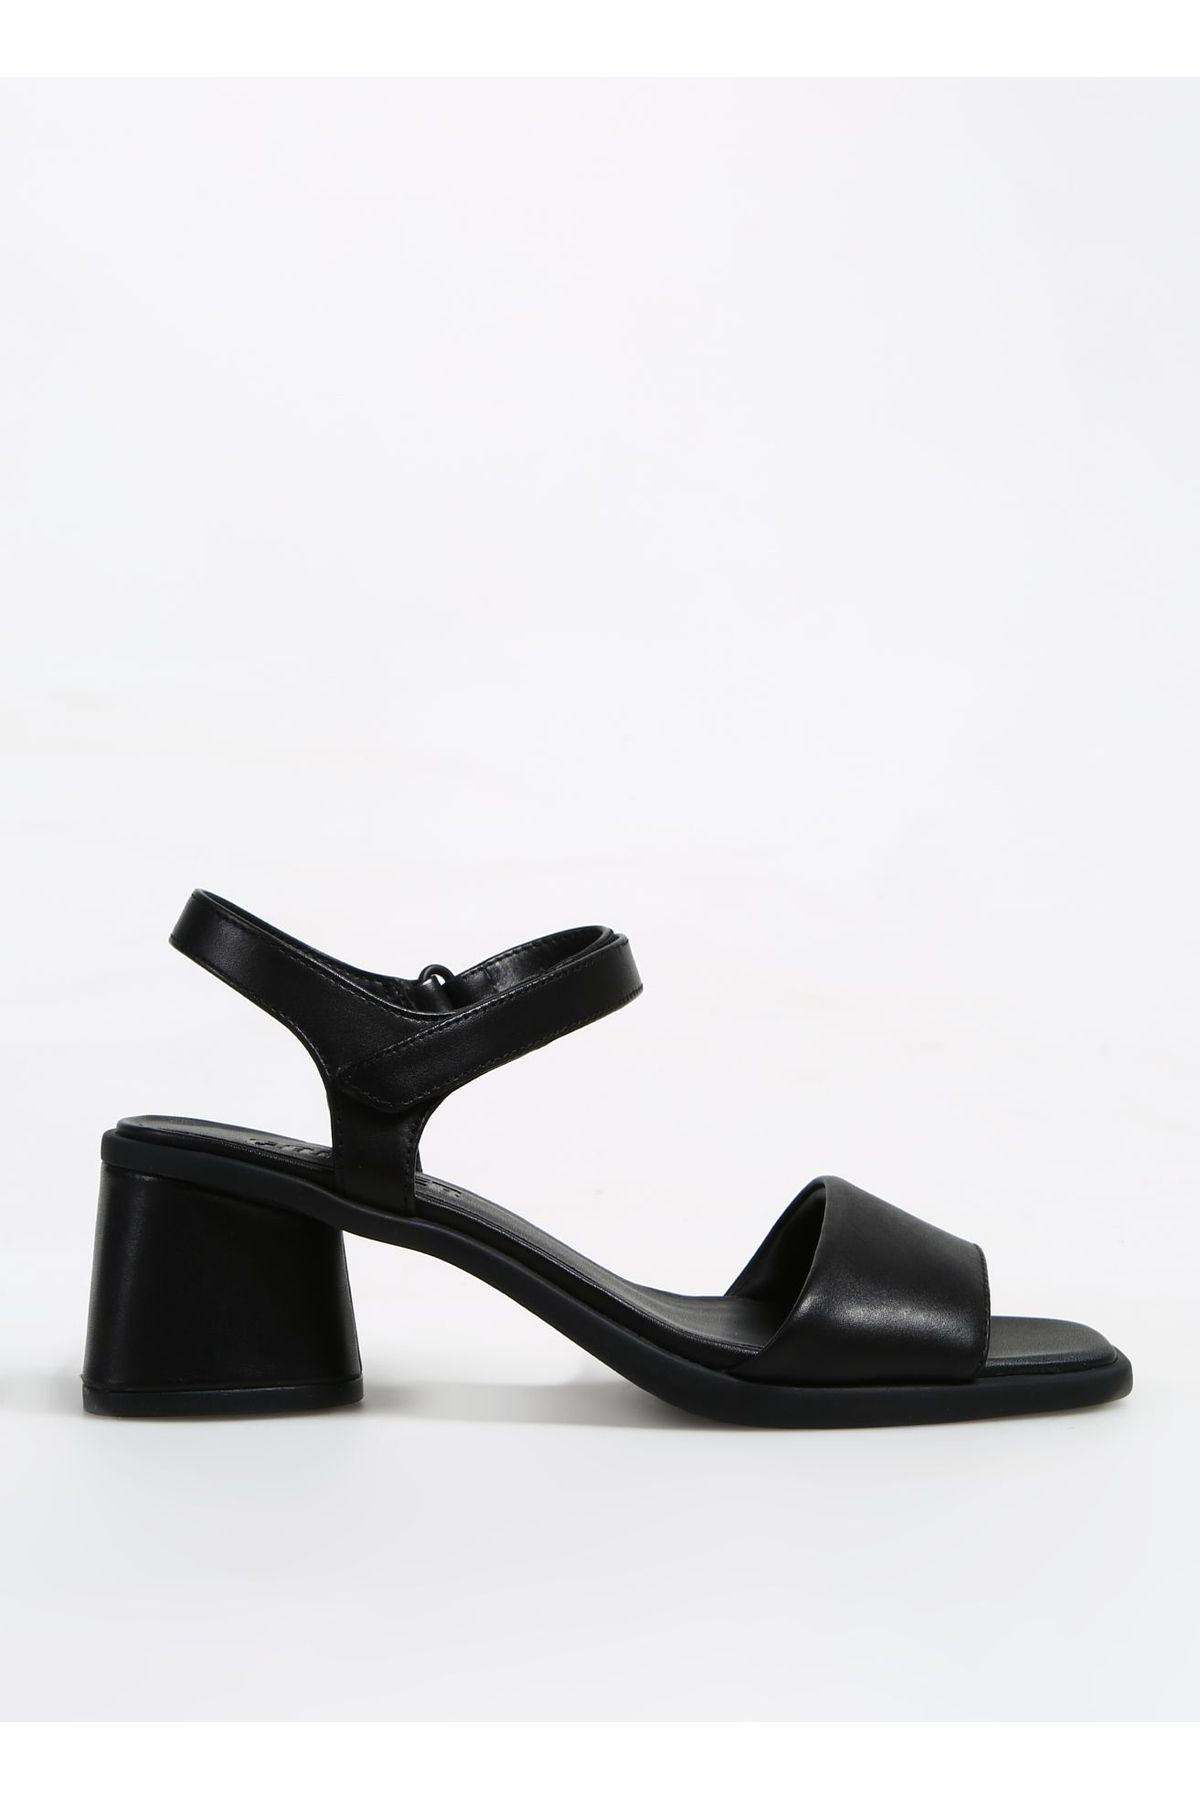 CAMPER Siyah Kadın Deri Topuklu Ayakkabı K201501-006